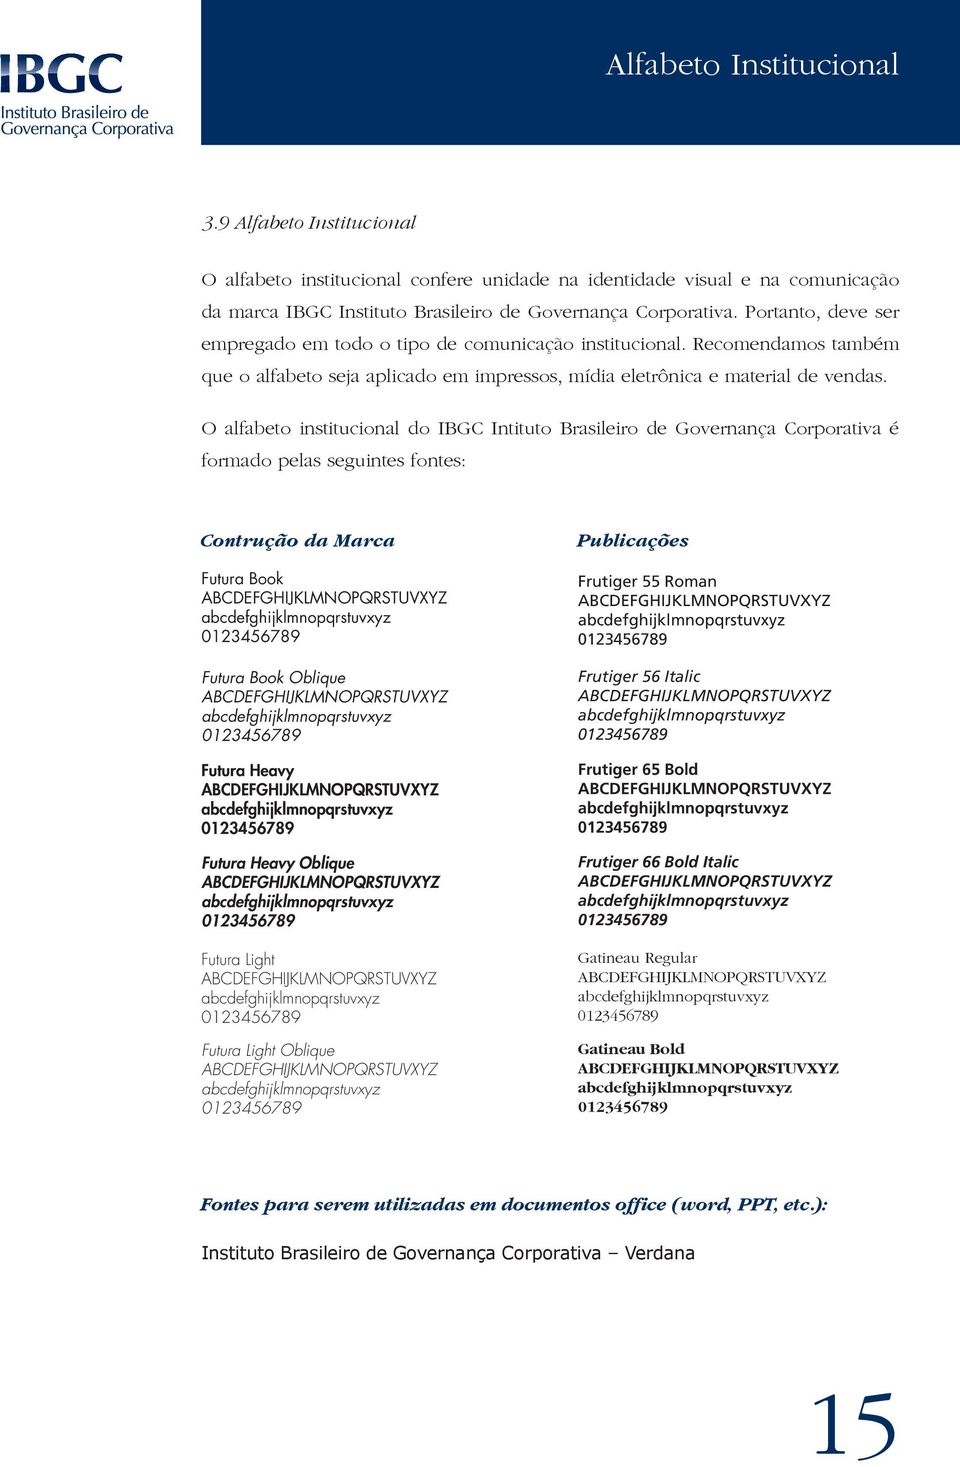 O alfabeto institucional do IBGC Intituto Brasileiro de Governança Corporativa é formado pelas seguintes fontes: Contrução da Marca Futura Book Futura Book Oblique Futura Heavy Futura Heavy Oblique